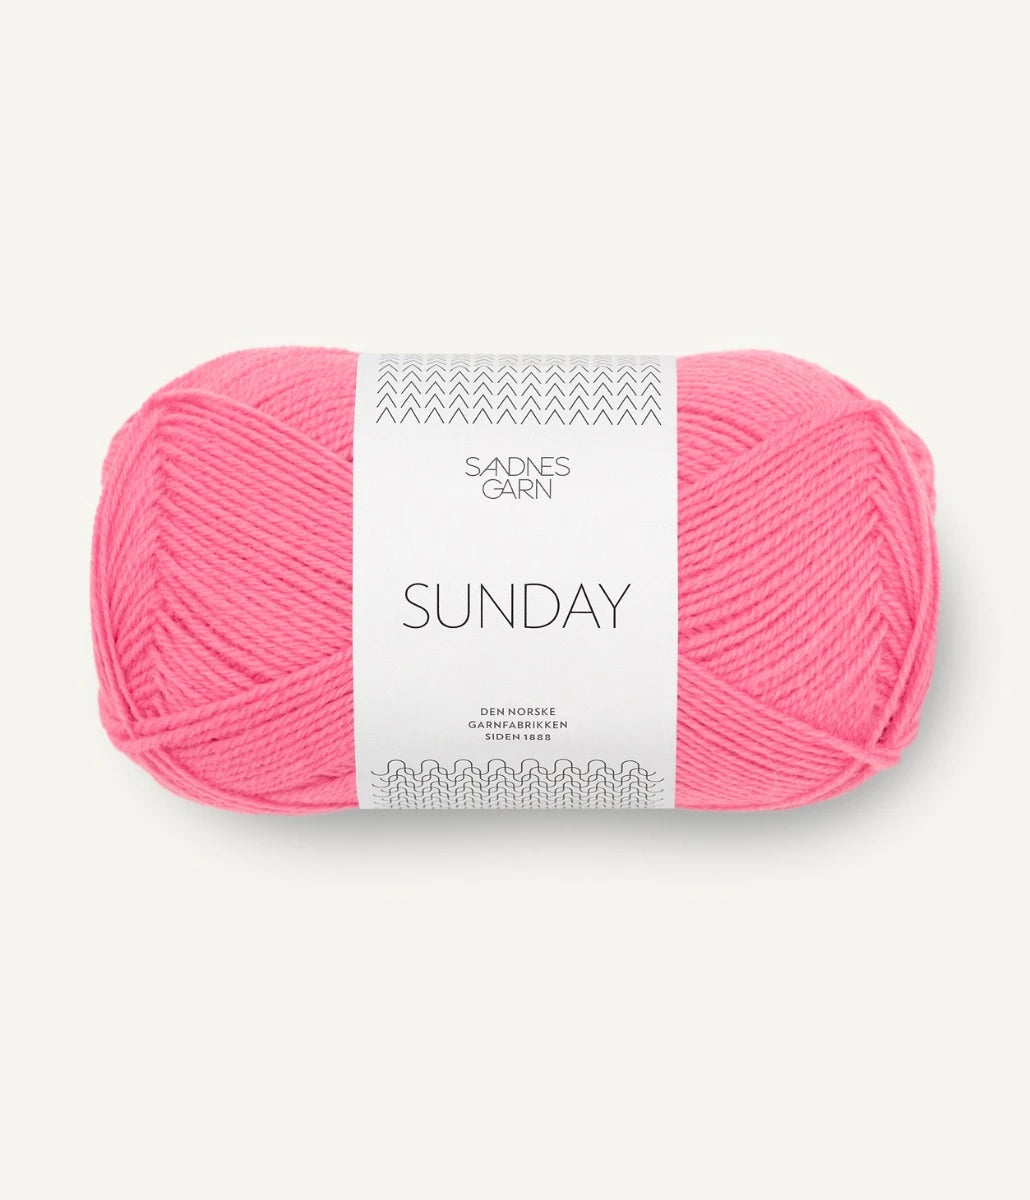 Kuvassa on Sandnes Garn Sunday lanka (yarn) värissä Bubblegum Pink.